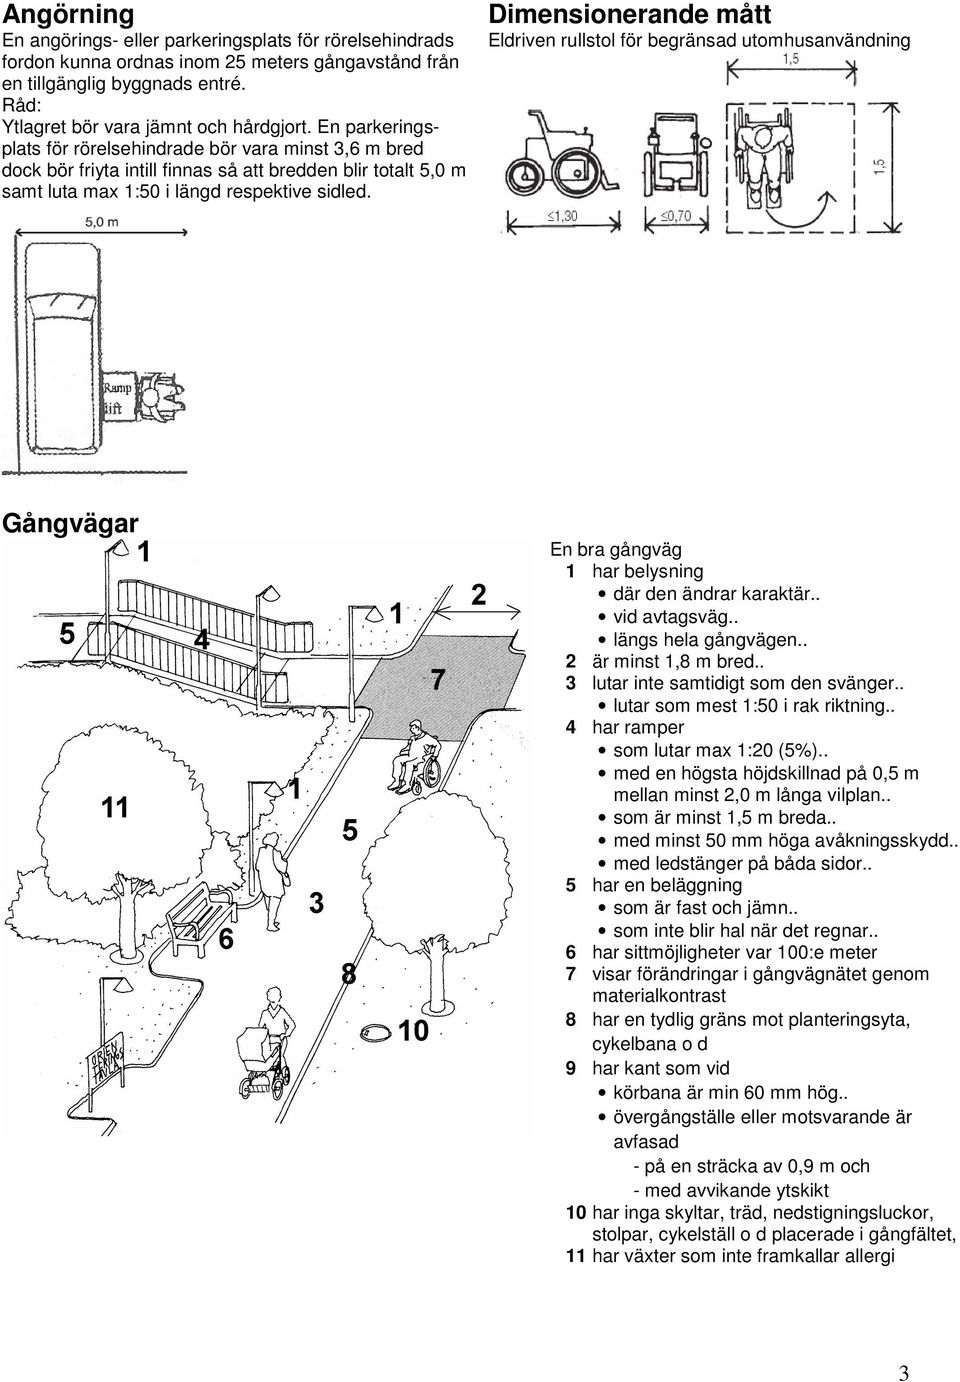 Dimensionerande mått Eldriven rullstol för begränsad utomhusanvändning Gångvägar En bra gångväg 1 har belysning där den ändrar karaktär.. vid avtagsväg.. längs hela gångvägen.. 2 är minst 1,8 m bred.